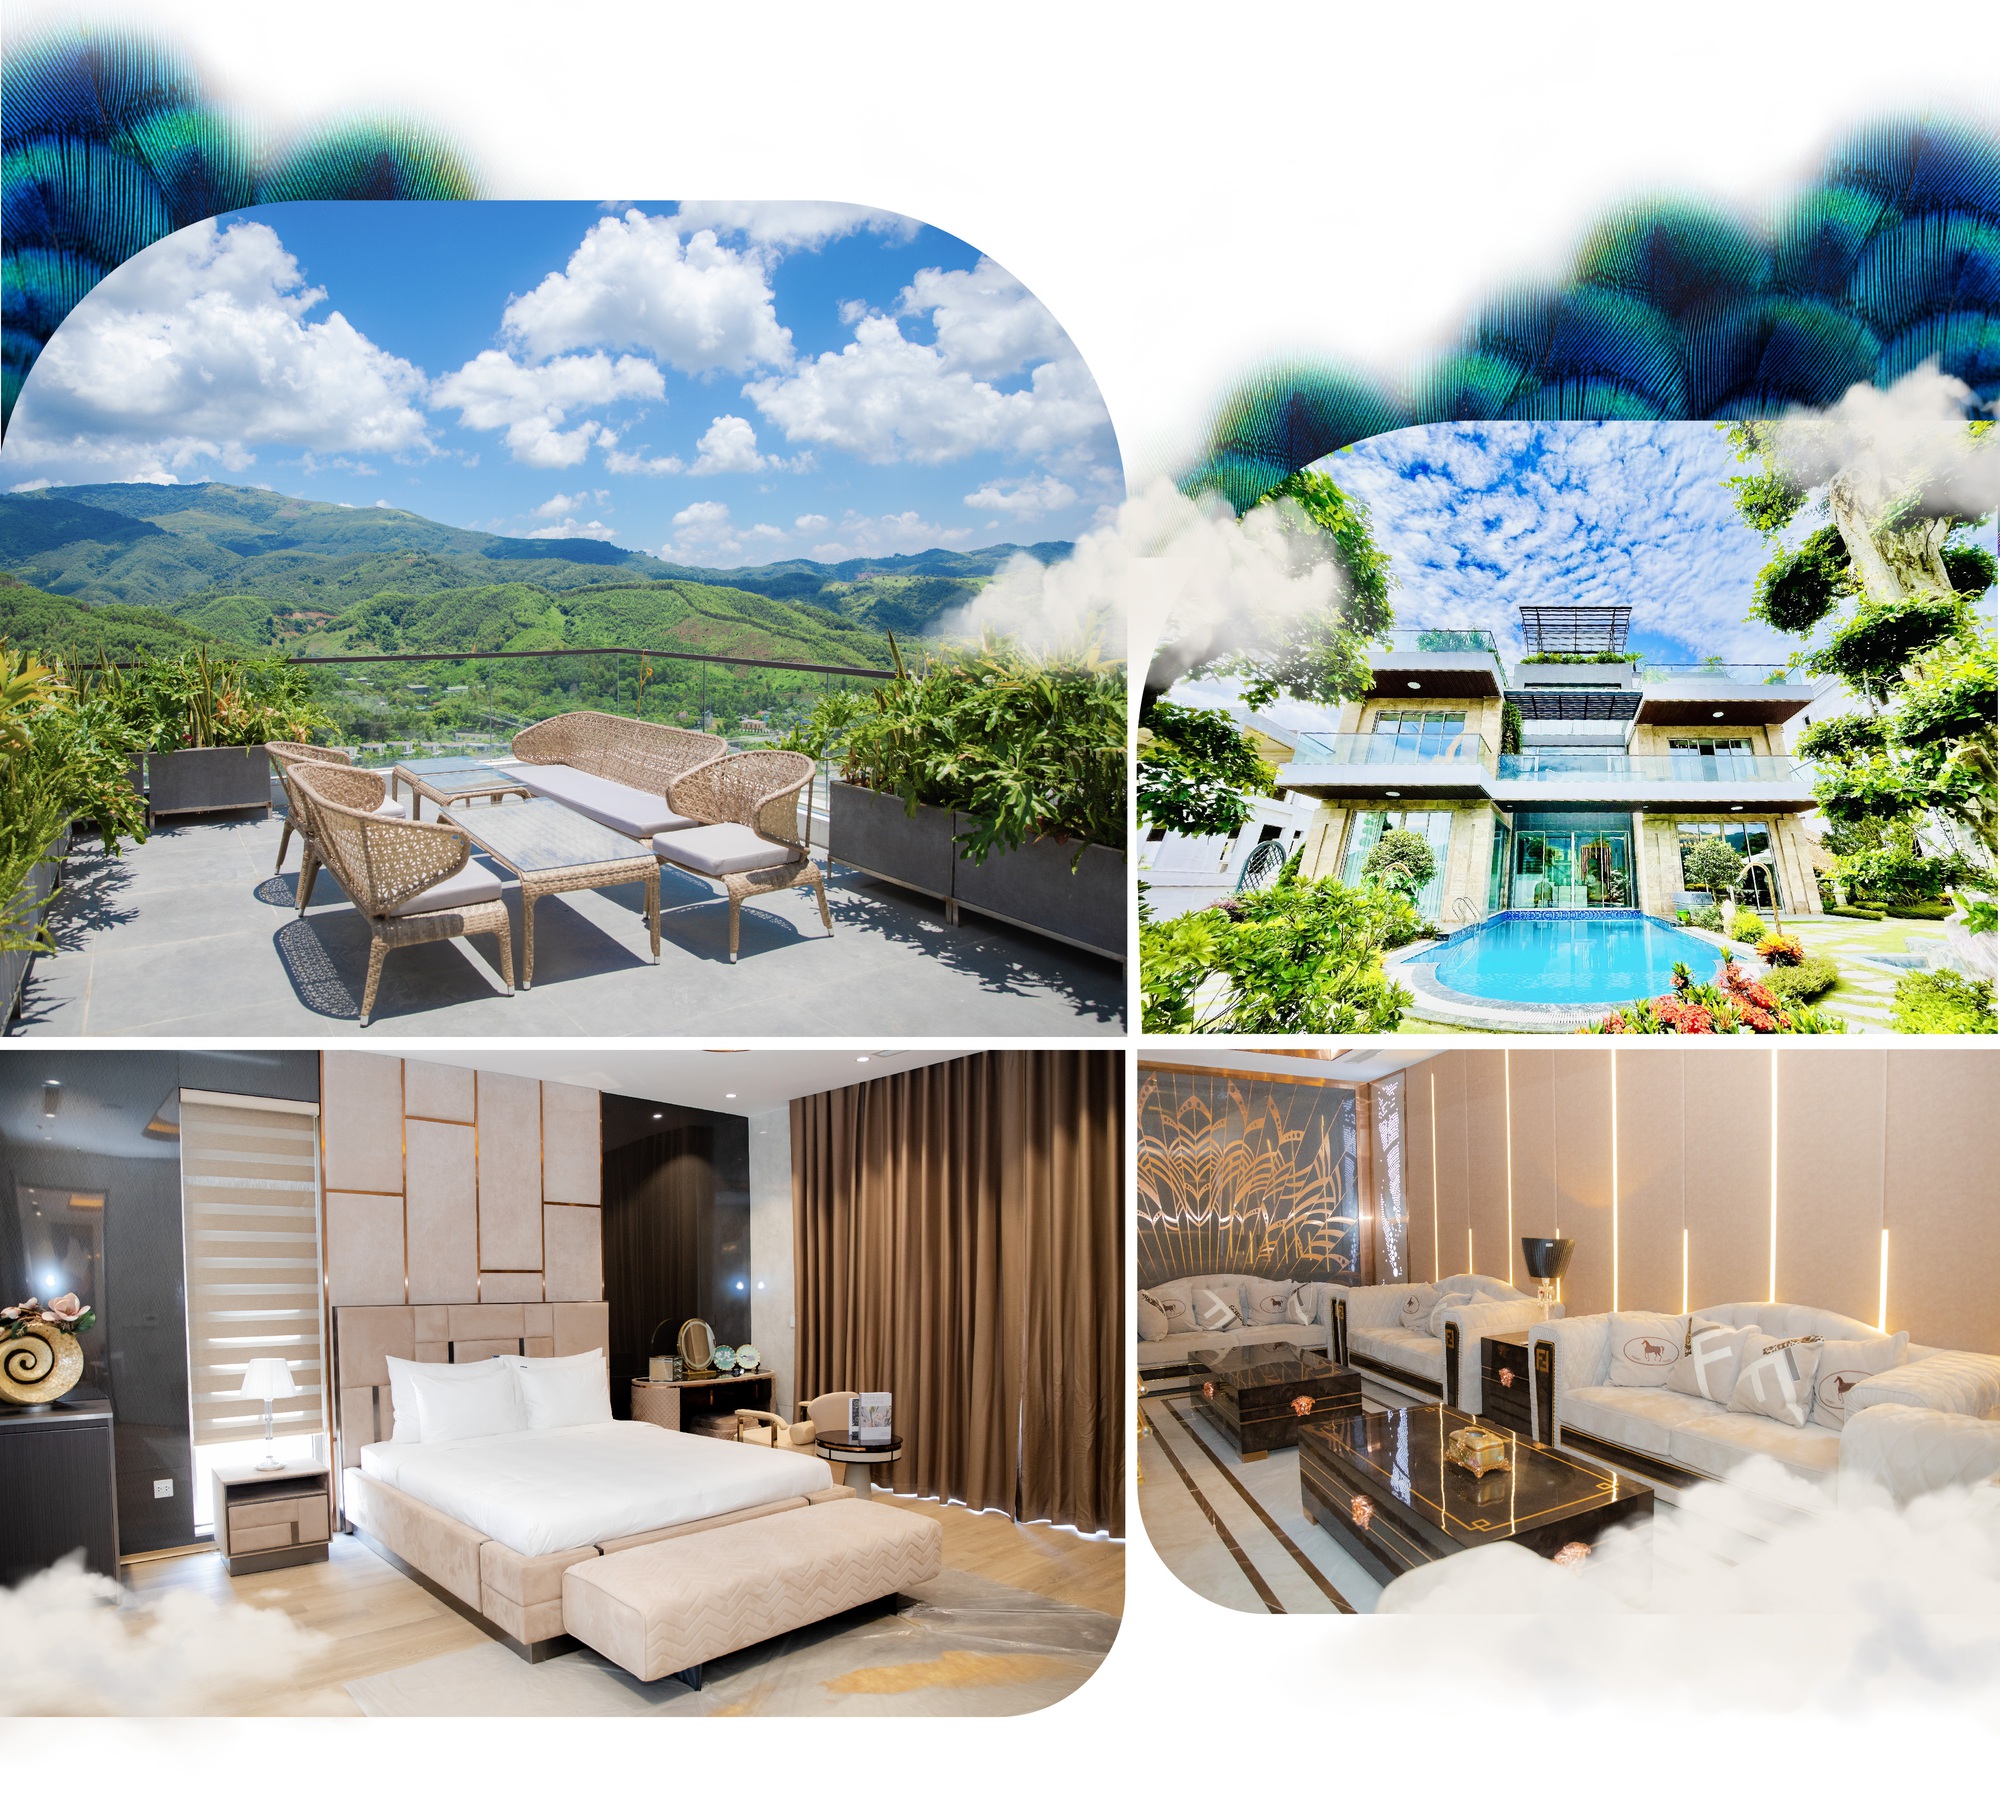 Ivory Villas & Resort: Dấu ấn mới trong xu hướng nghỉ dưỡng ven đô - Ảnh 11.